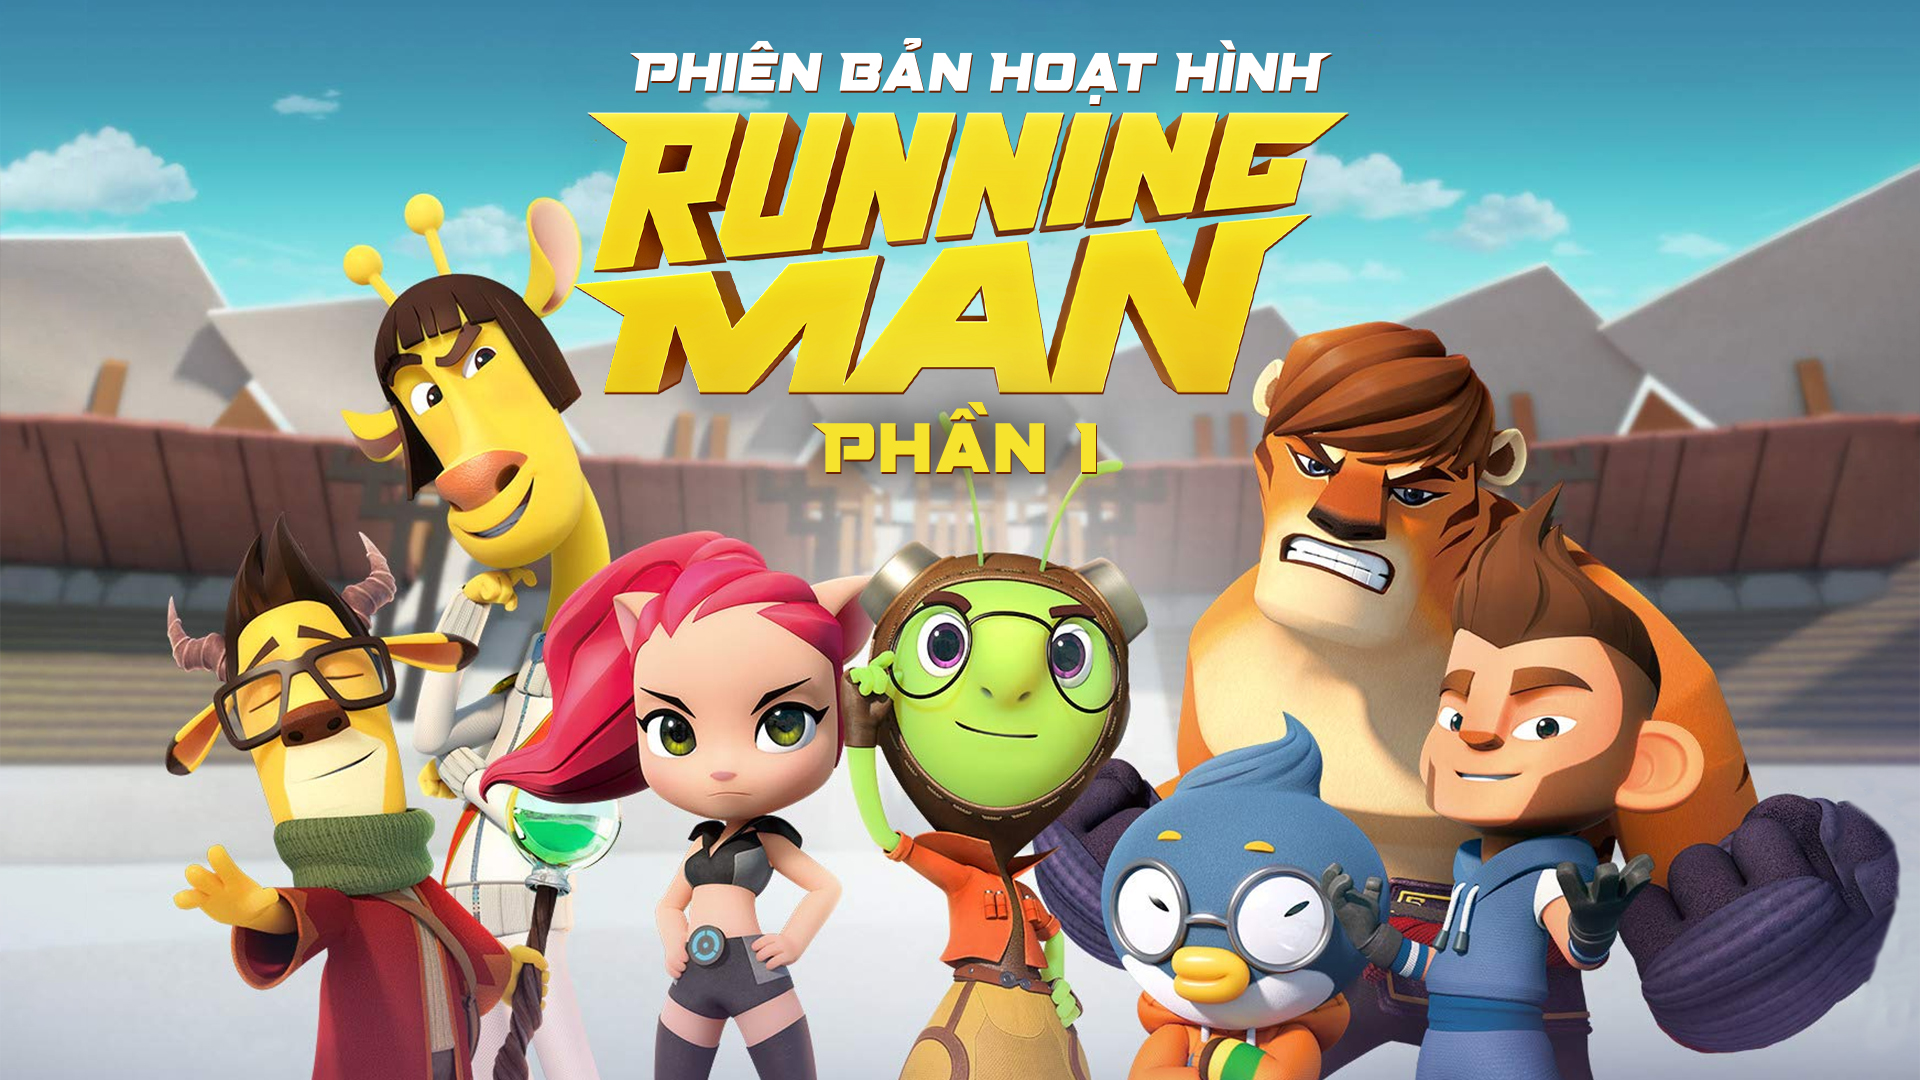 Running Man - Phiên bản hoạt hình 1 - 48 Tập | VieON